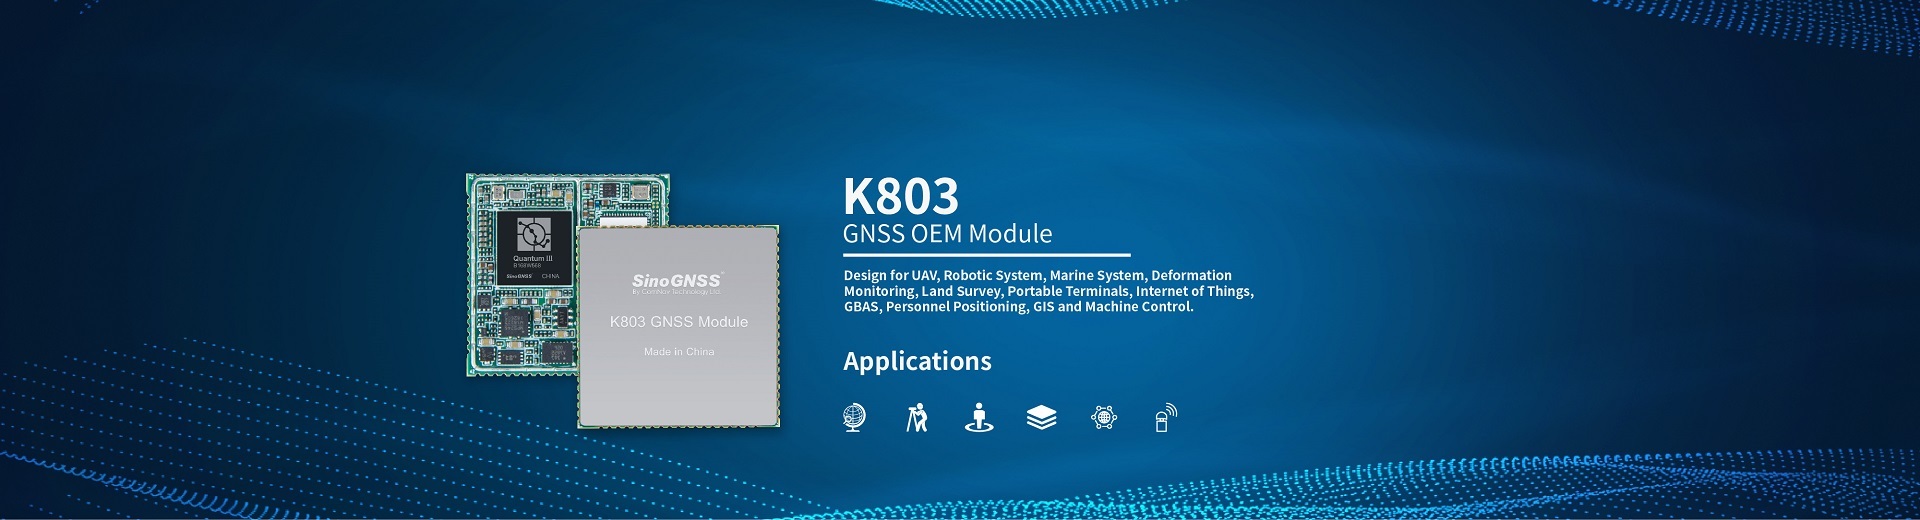 K803 GNSS OEM module